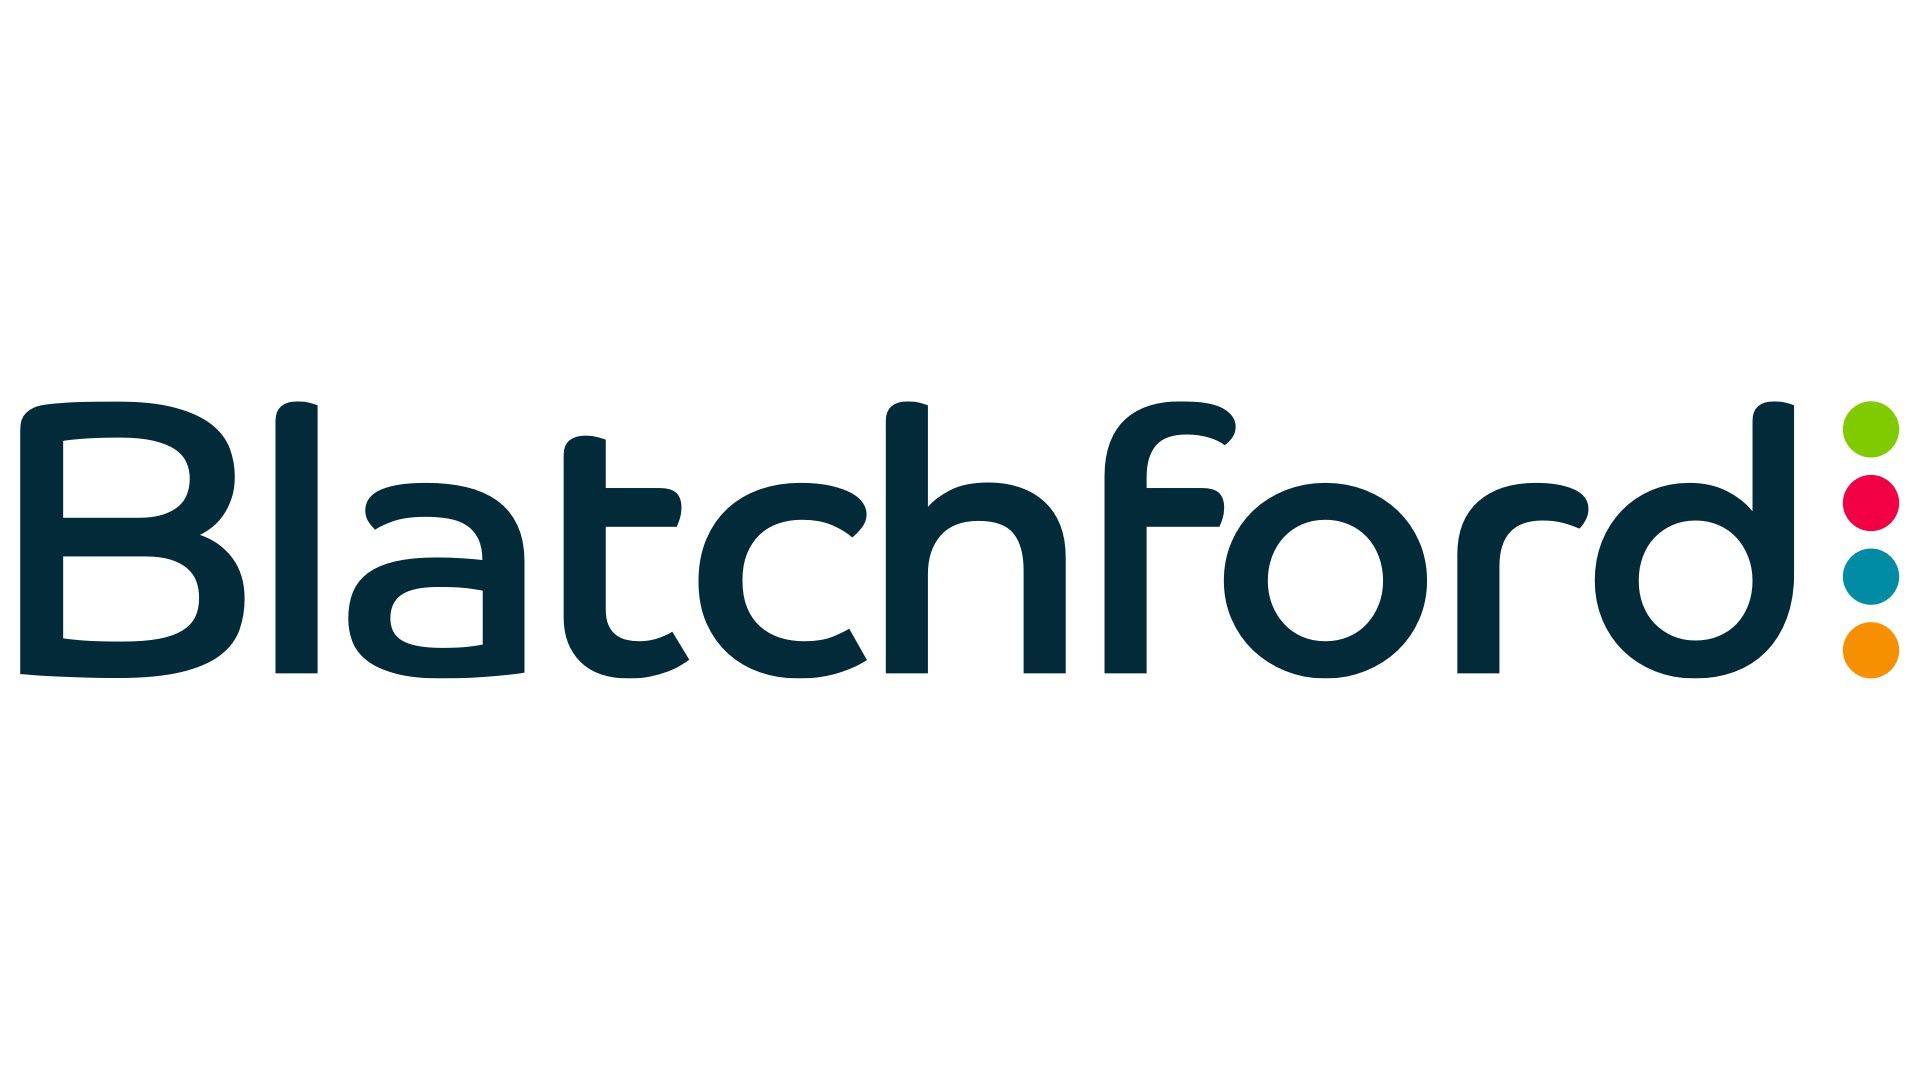 Blatchford logo